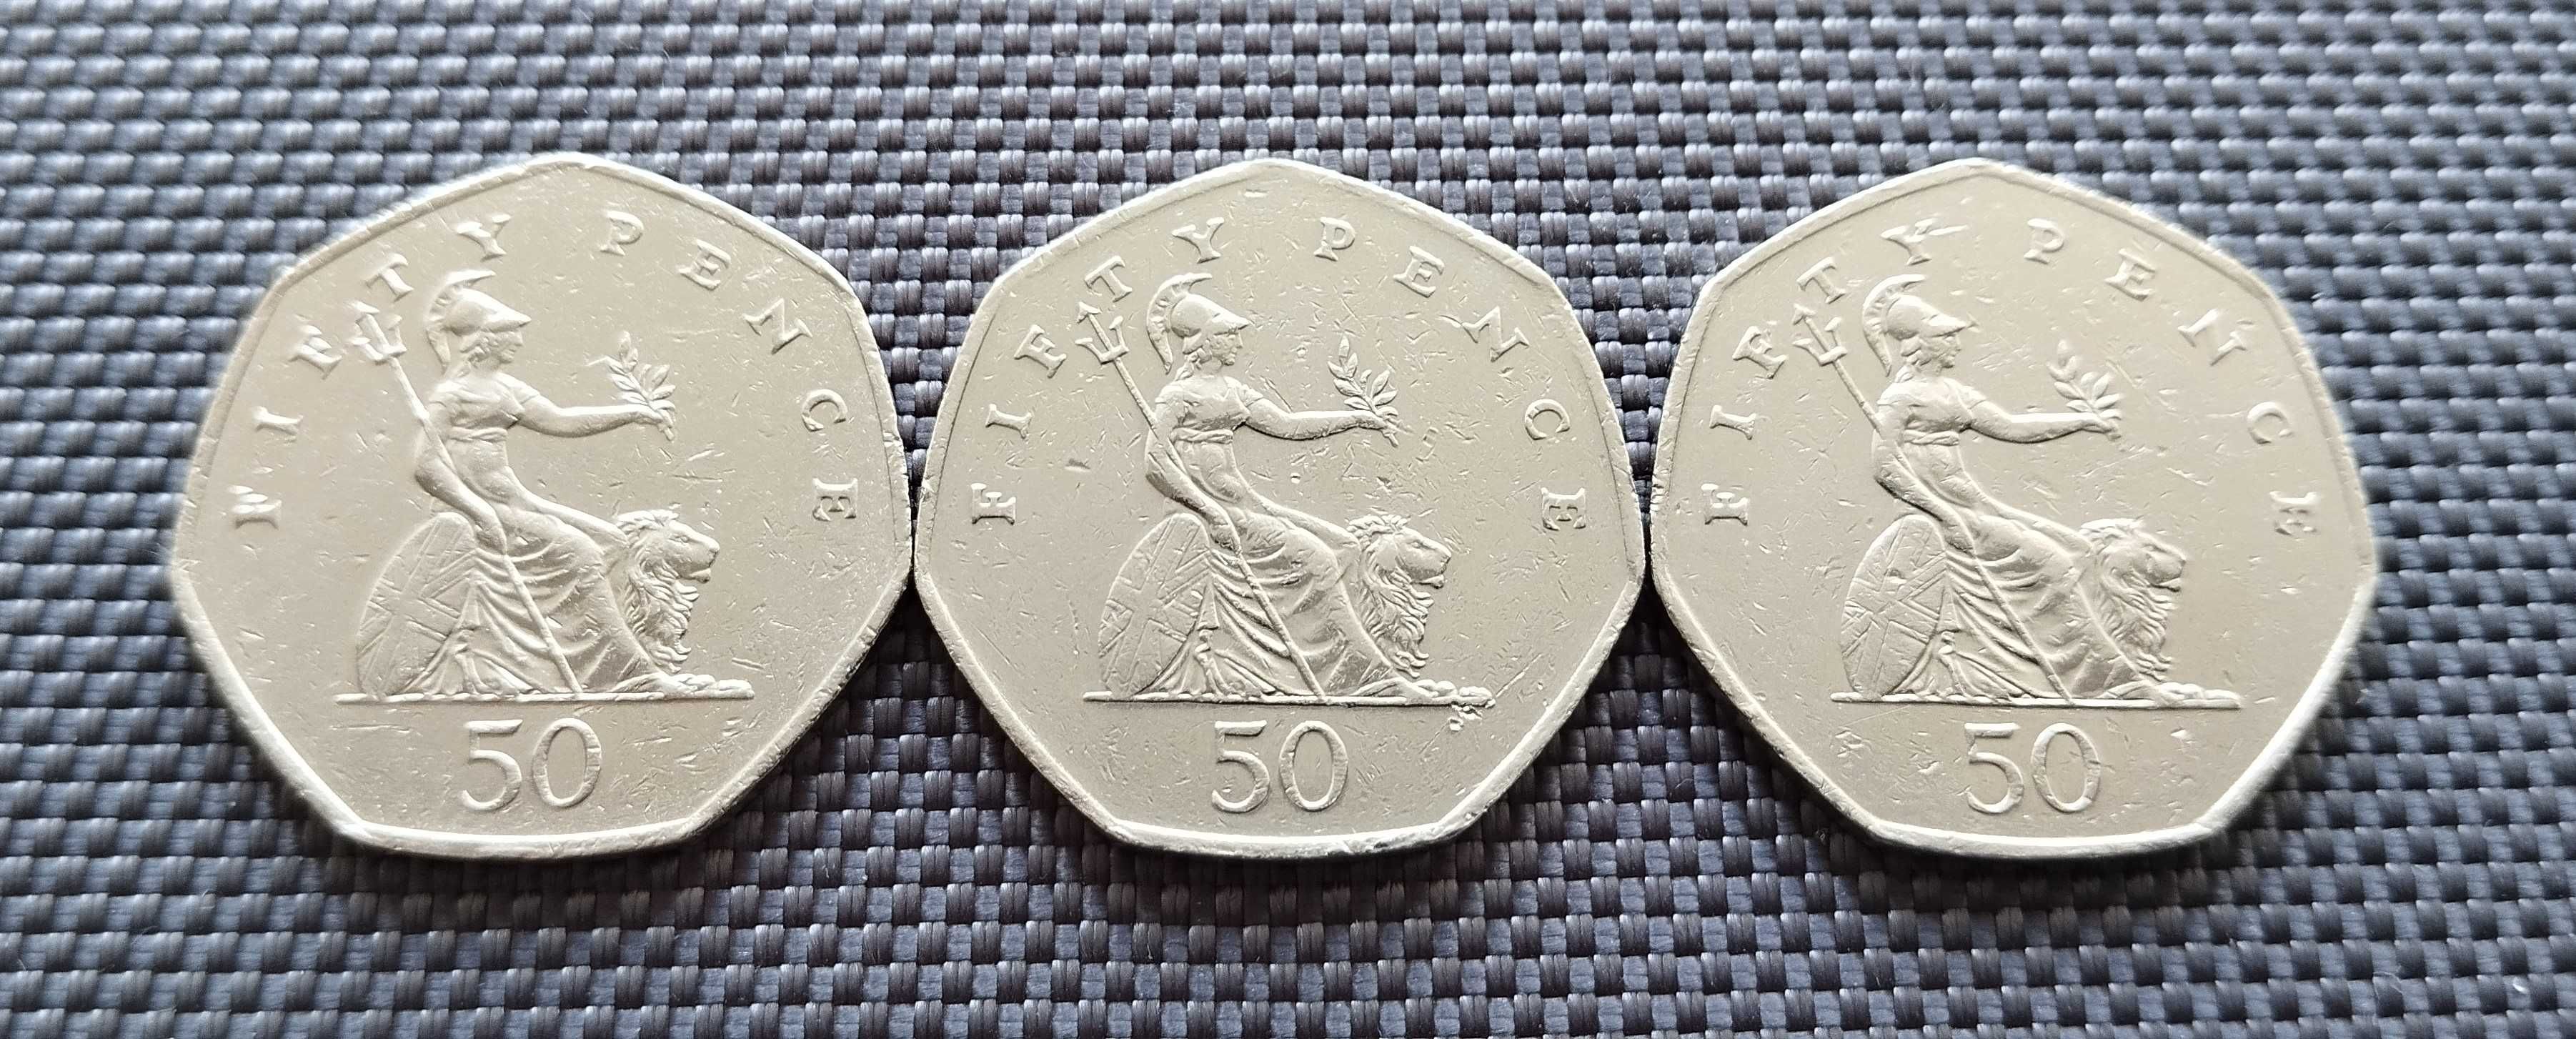 Коллекция монет Великобритании 50 пенсов . 3 шт за 120 грн.